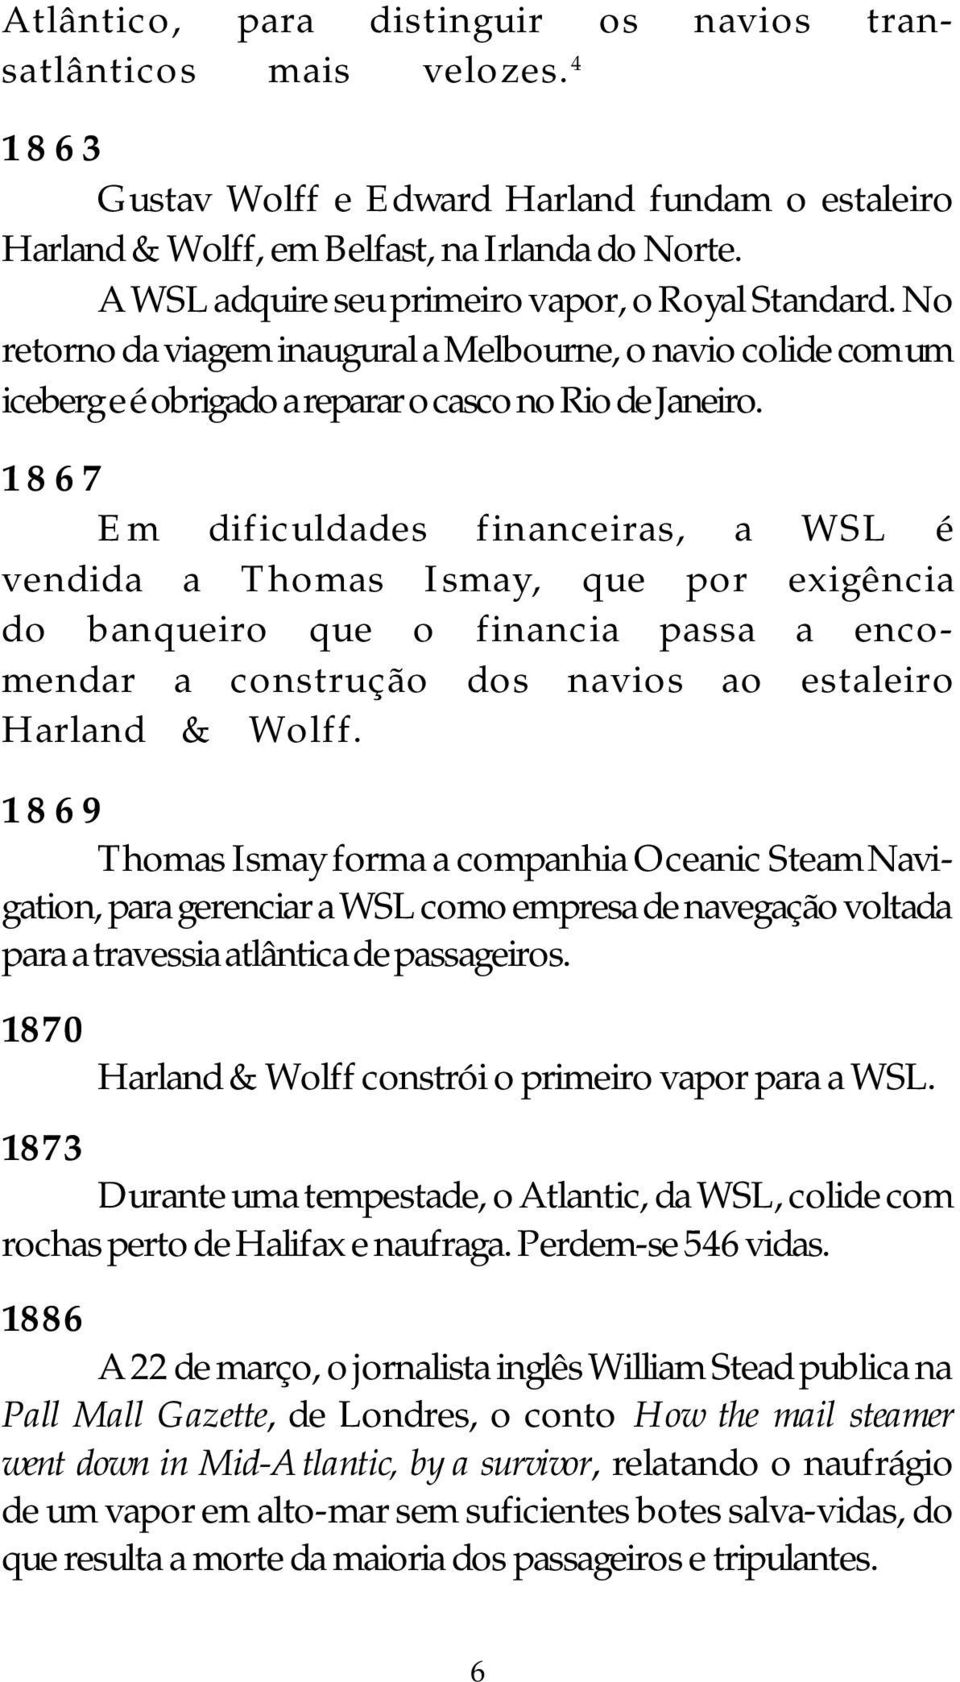 1867 Em dificuldades financeiras, a WSL é vendida a Thomas Ismay, que por exigência do banqueiro que o financia passa a encomendar a construção dos navios ao estaleiro Harland & Wolff.